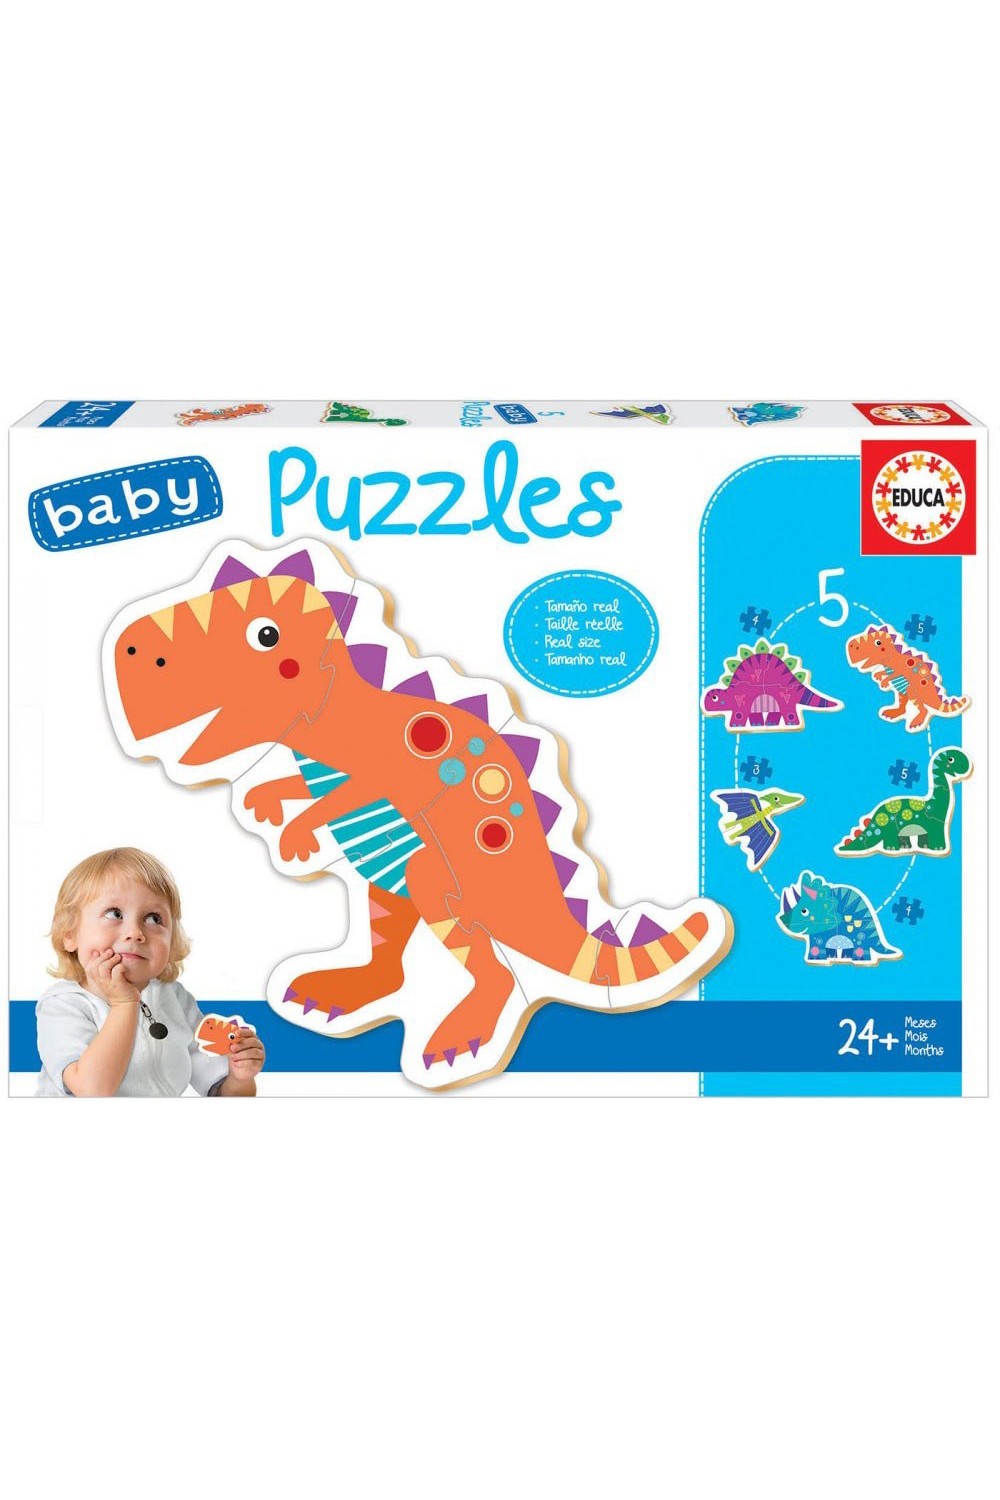 Παιδικό Puzzle Dinosaur 21pcs για 2+ Ετών Educa 018.873